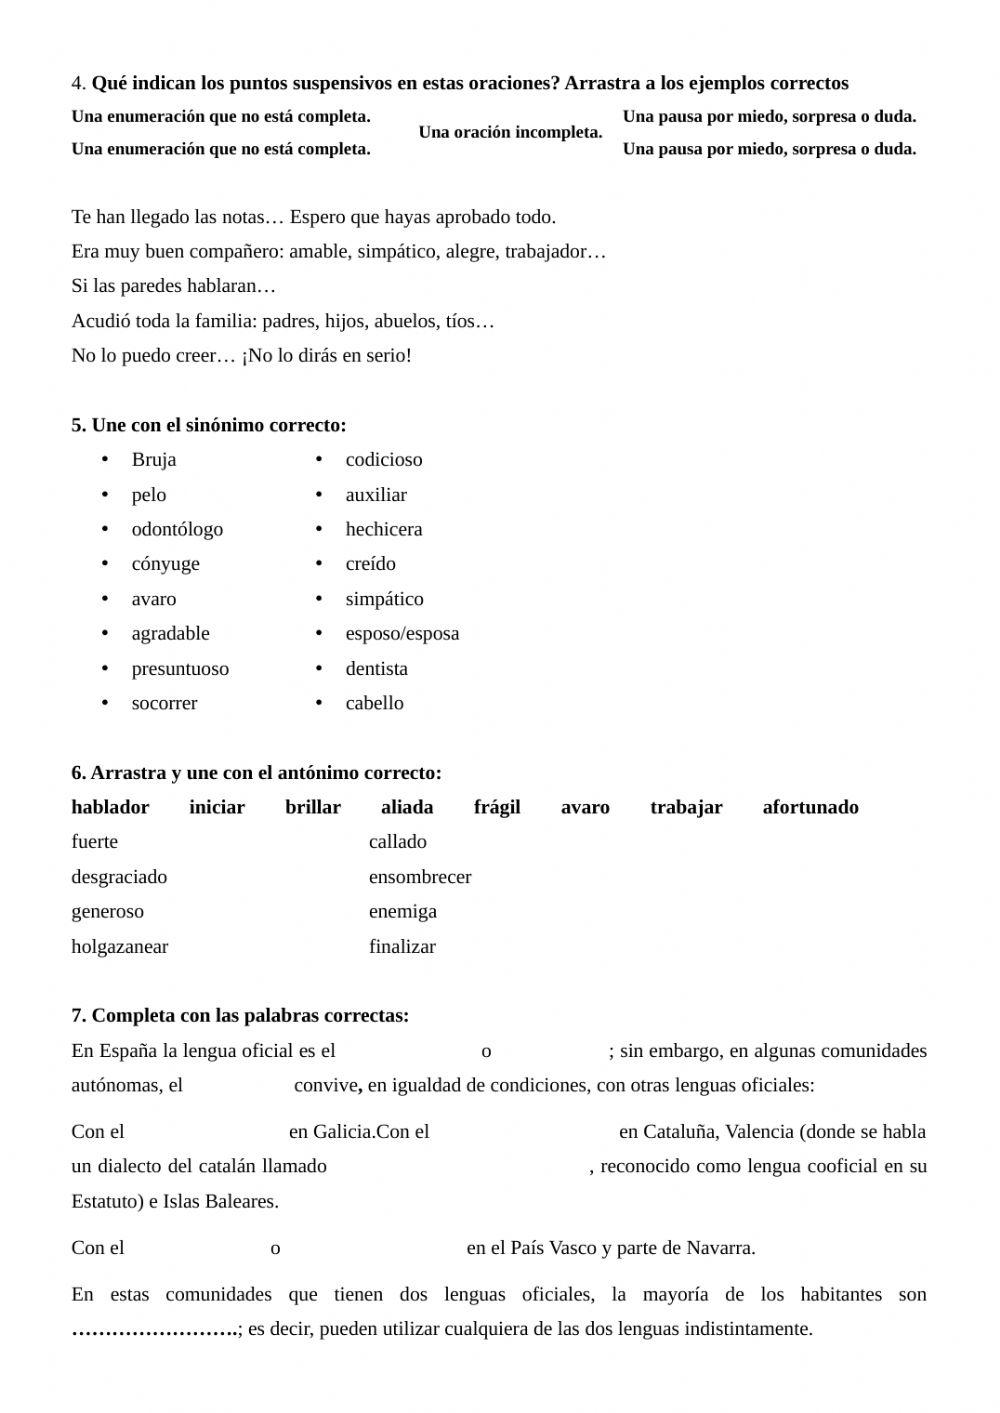 Examen de Lengua Castellana